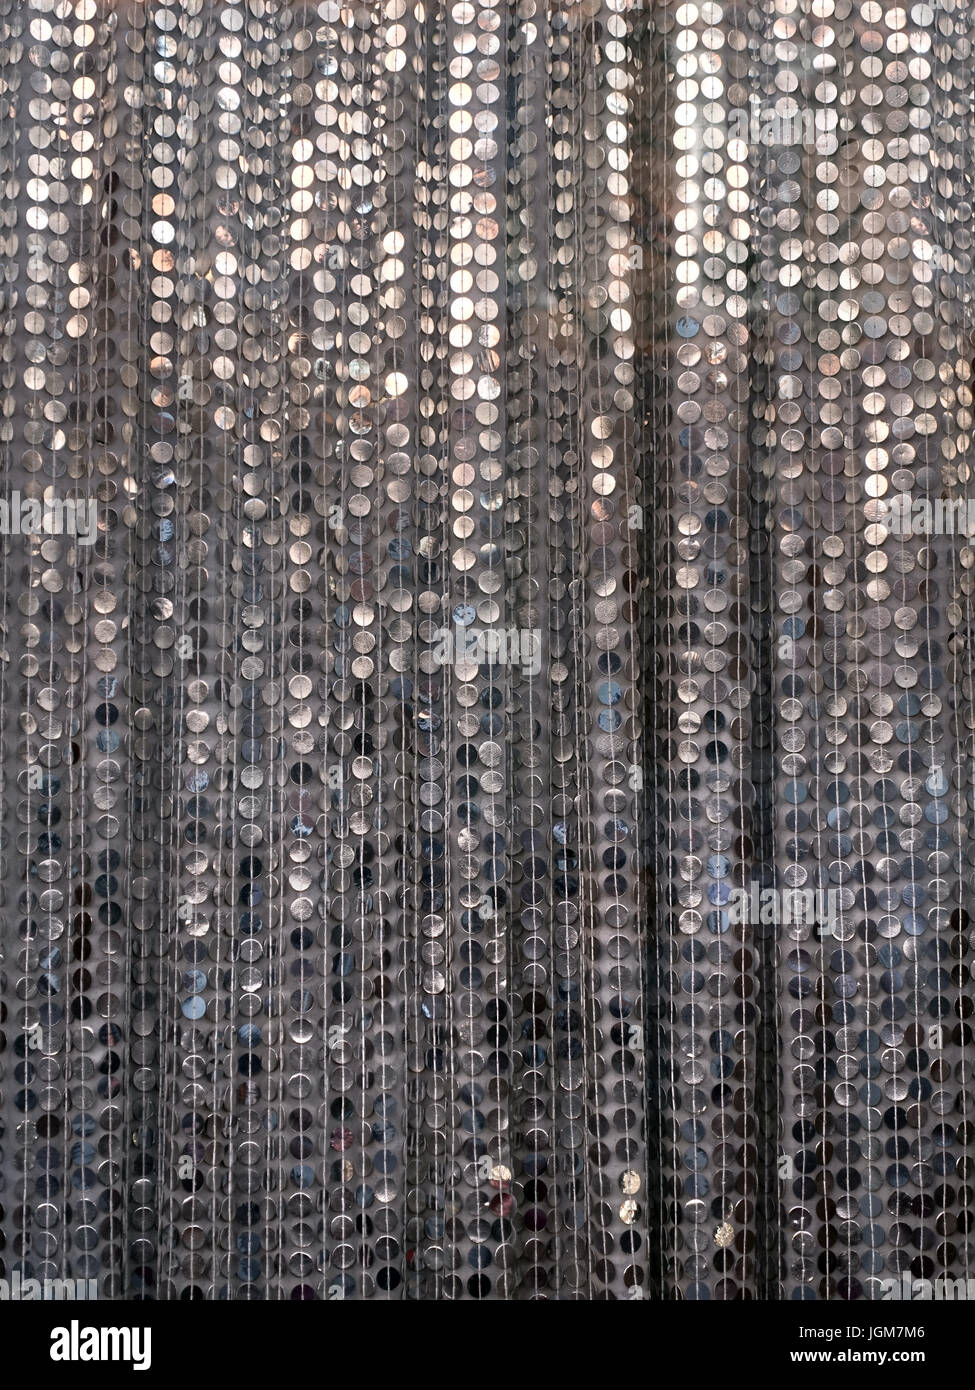 Pailletten Perlen Vorhang - Silber glitzernden Zeichenfolge Wafer Kreisen  Eingang Stockfotografie - Alamy